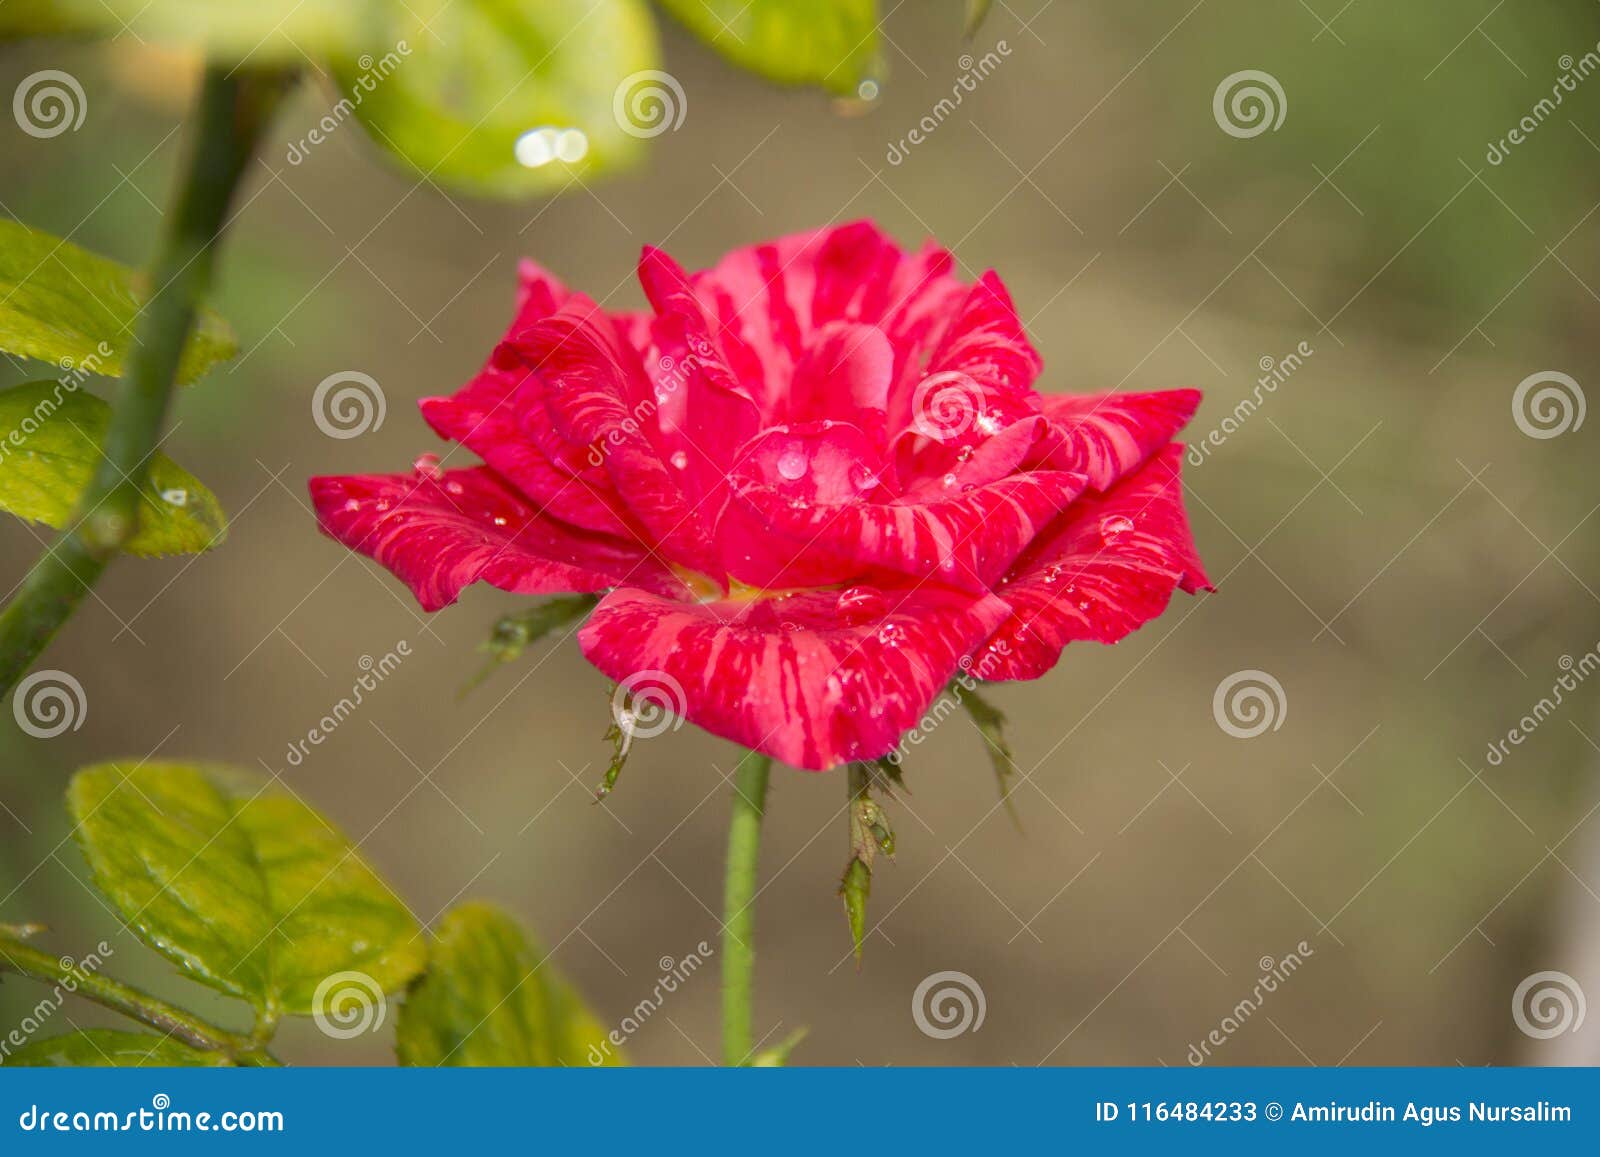 A Rose Pink Flower Mawar Berduri Bunga Mawar Stock Image Image